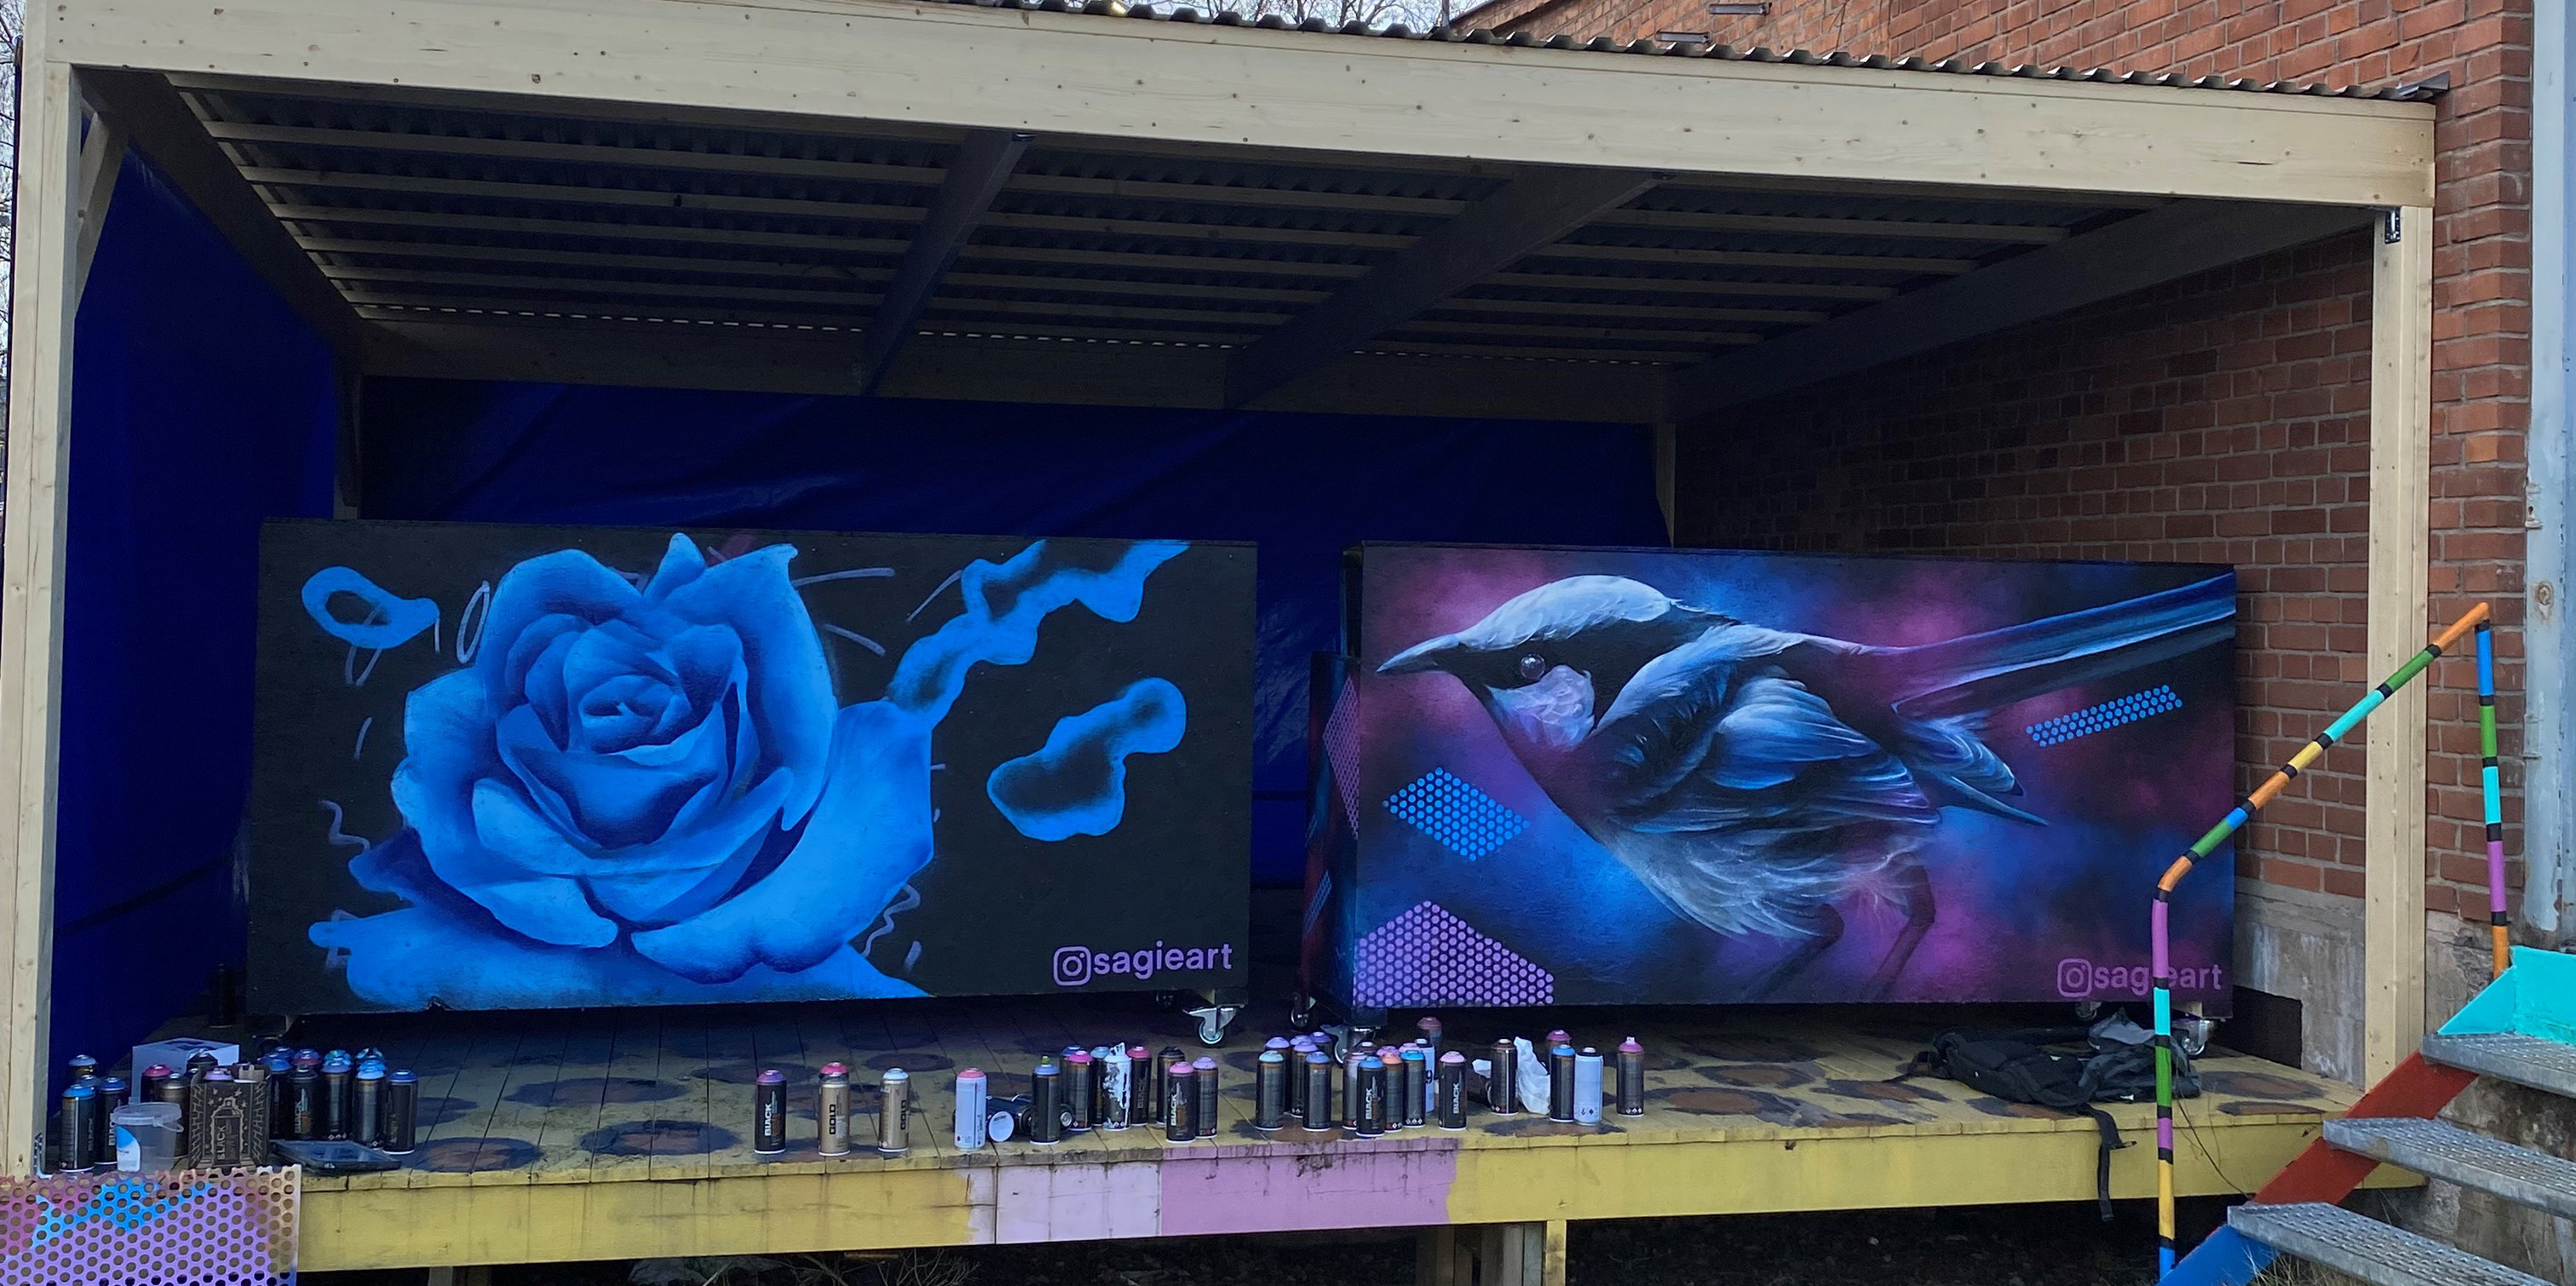 De två bardiskarna. Den ena föreställer en fågel och den andra en ros. Båda går i lila och blåa toner. Framför bardiskarna står sprayflaskor som använts till målningarna. 